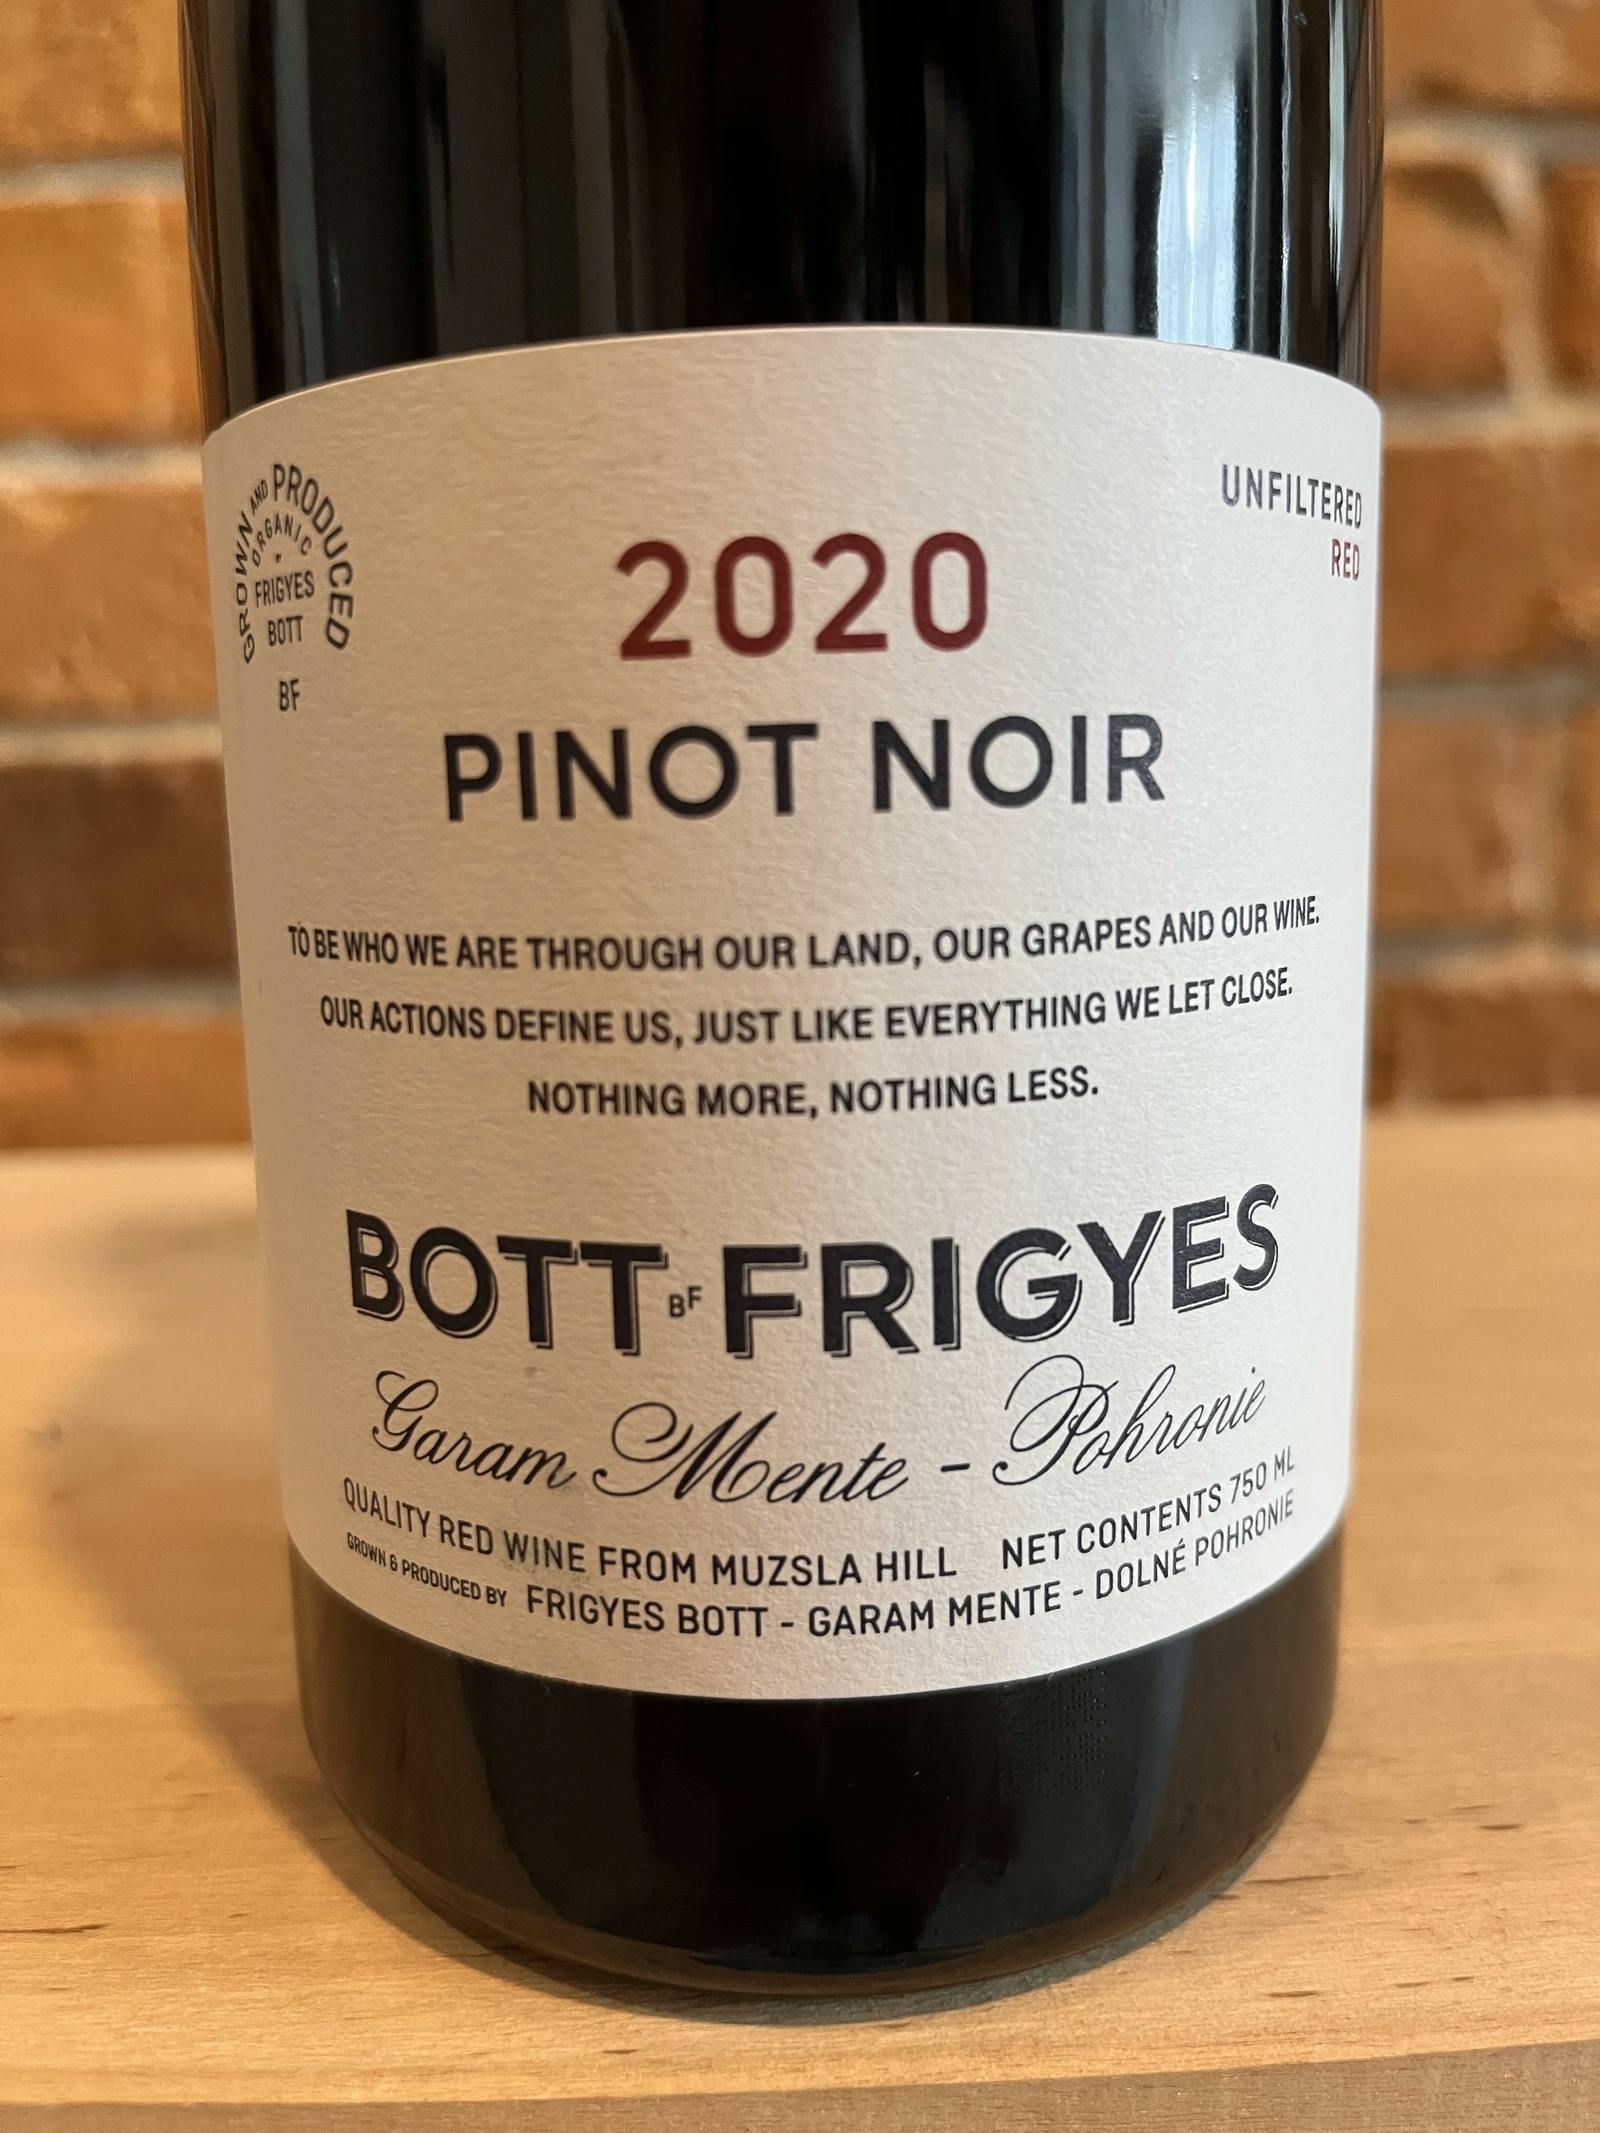 Bott Frigyes Pinot Noir 2020